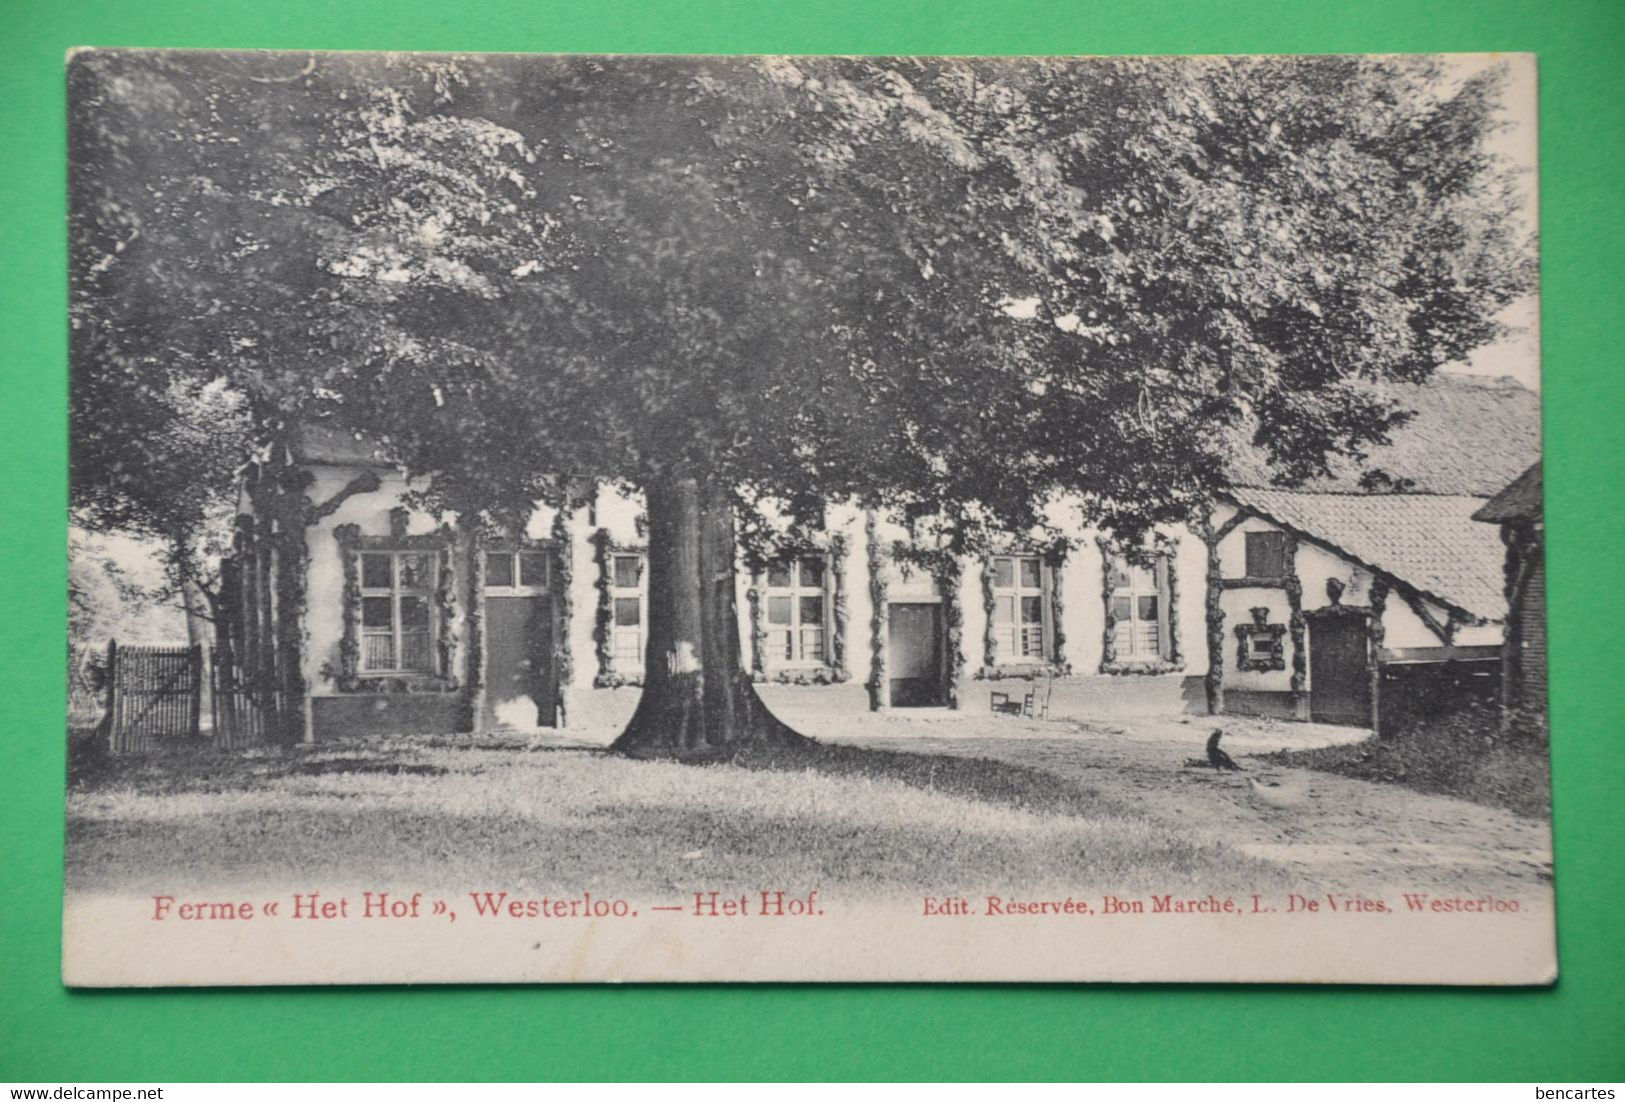 Westerloo 1909: Ferme "Het Hof" - Westerlo